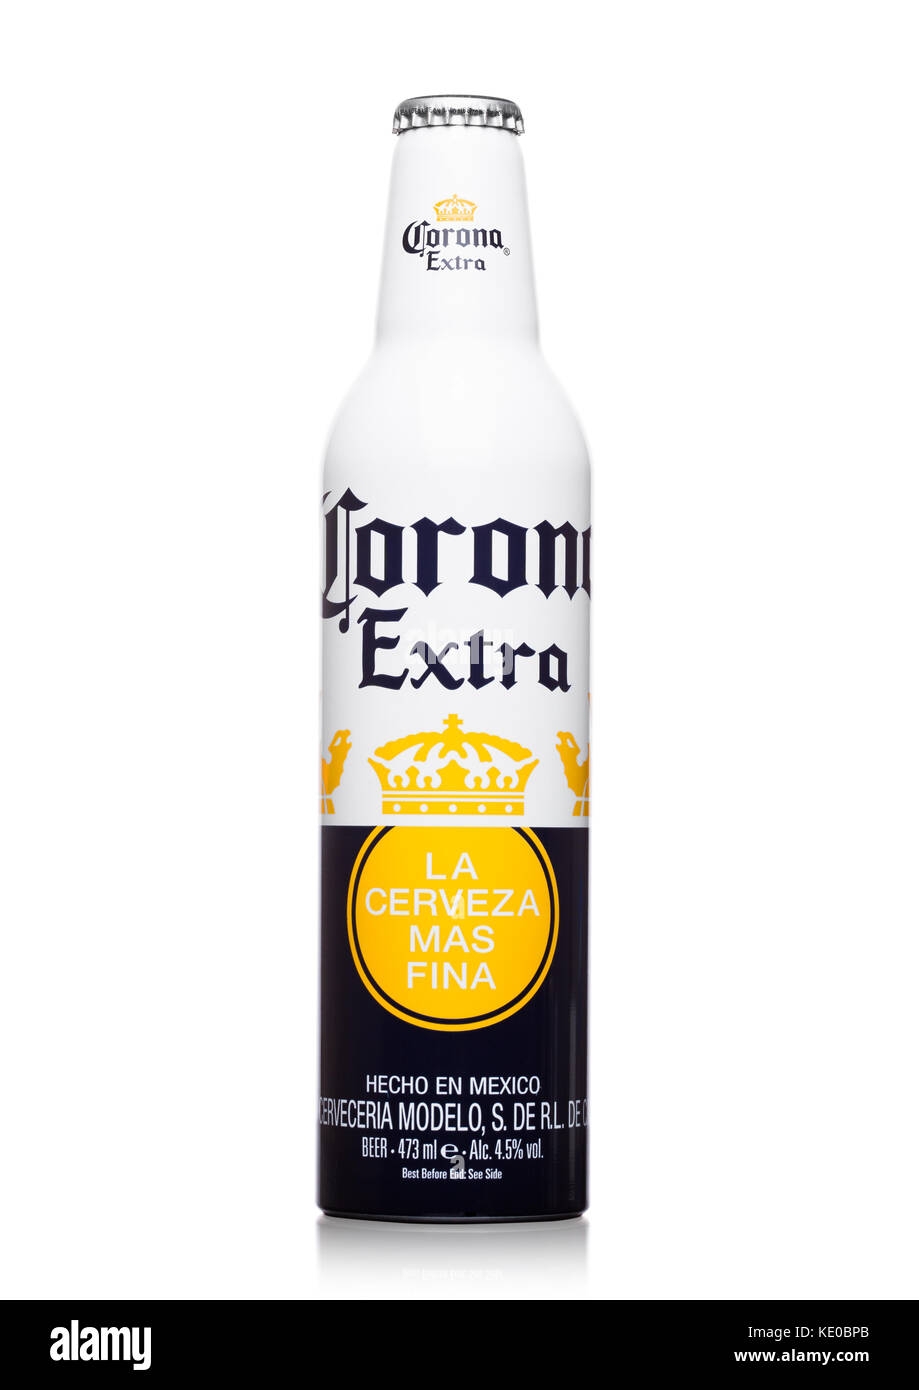 LONDRES, REINO UNIDO - 22 DE JUNIO de 2017: Botella de aluminio de Cerveza Corona Extra sobre fondo blanco. Cerveza importada más popular en los Estados Unidos. Edición limitada Foto de stock